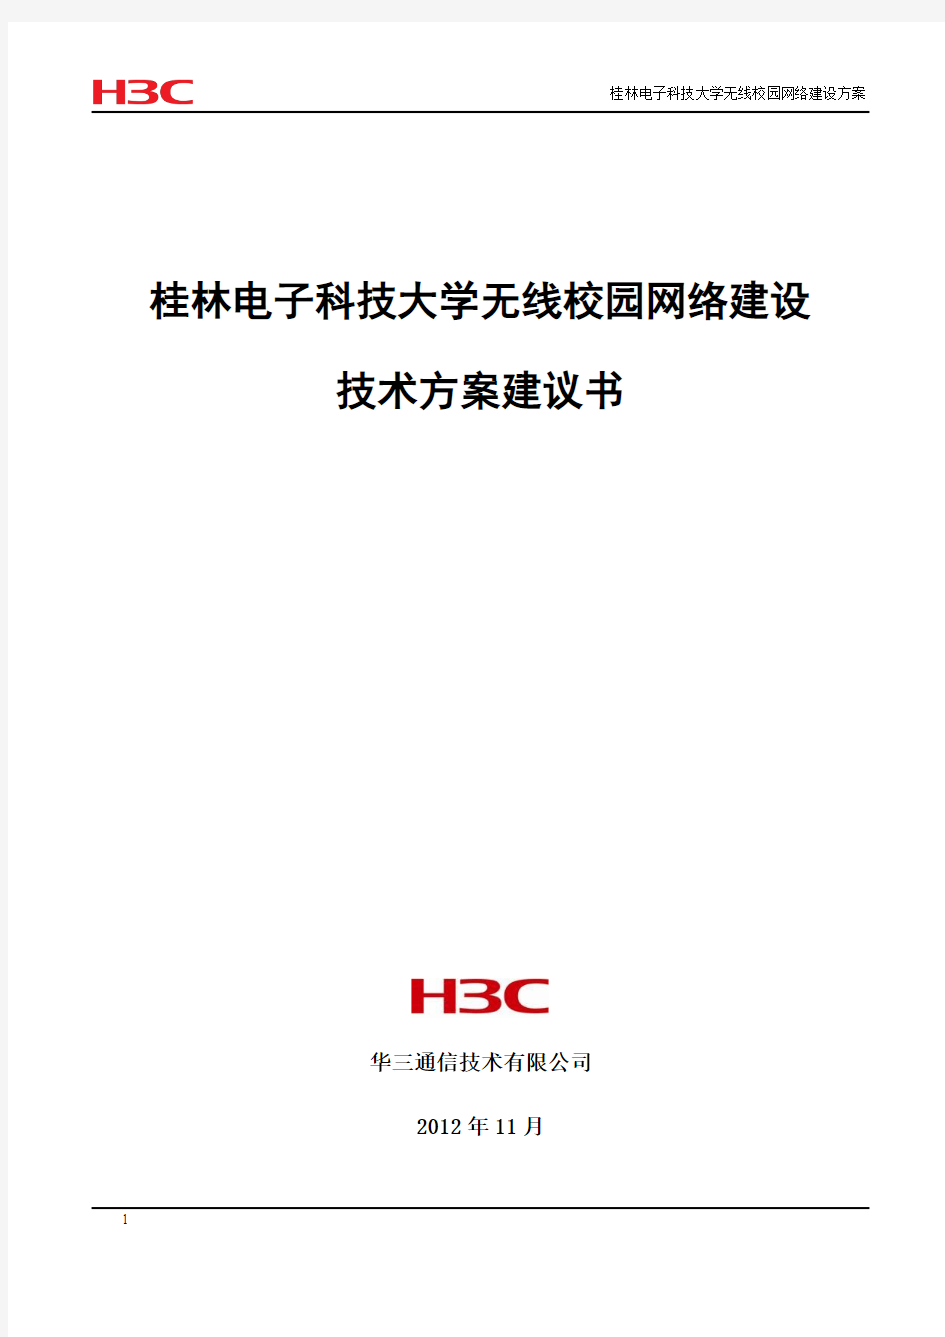 桂林电子科技大学无线校园网络建设方案书20121126